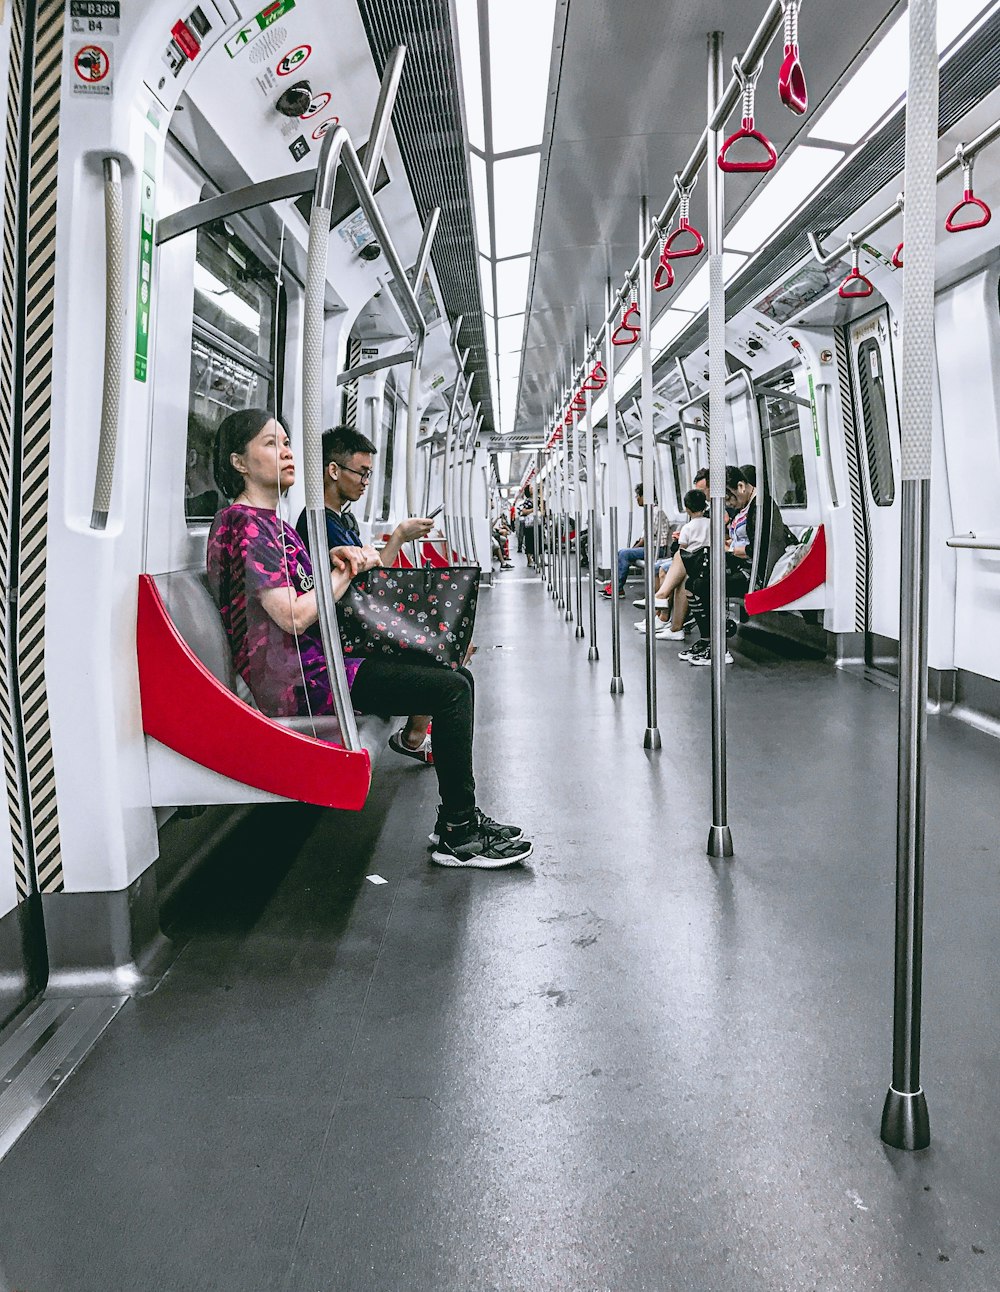 Gente sentada en el tren rojo y blanco